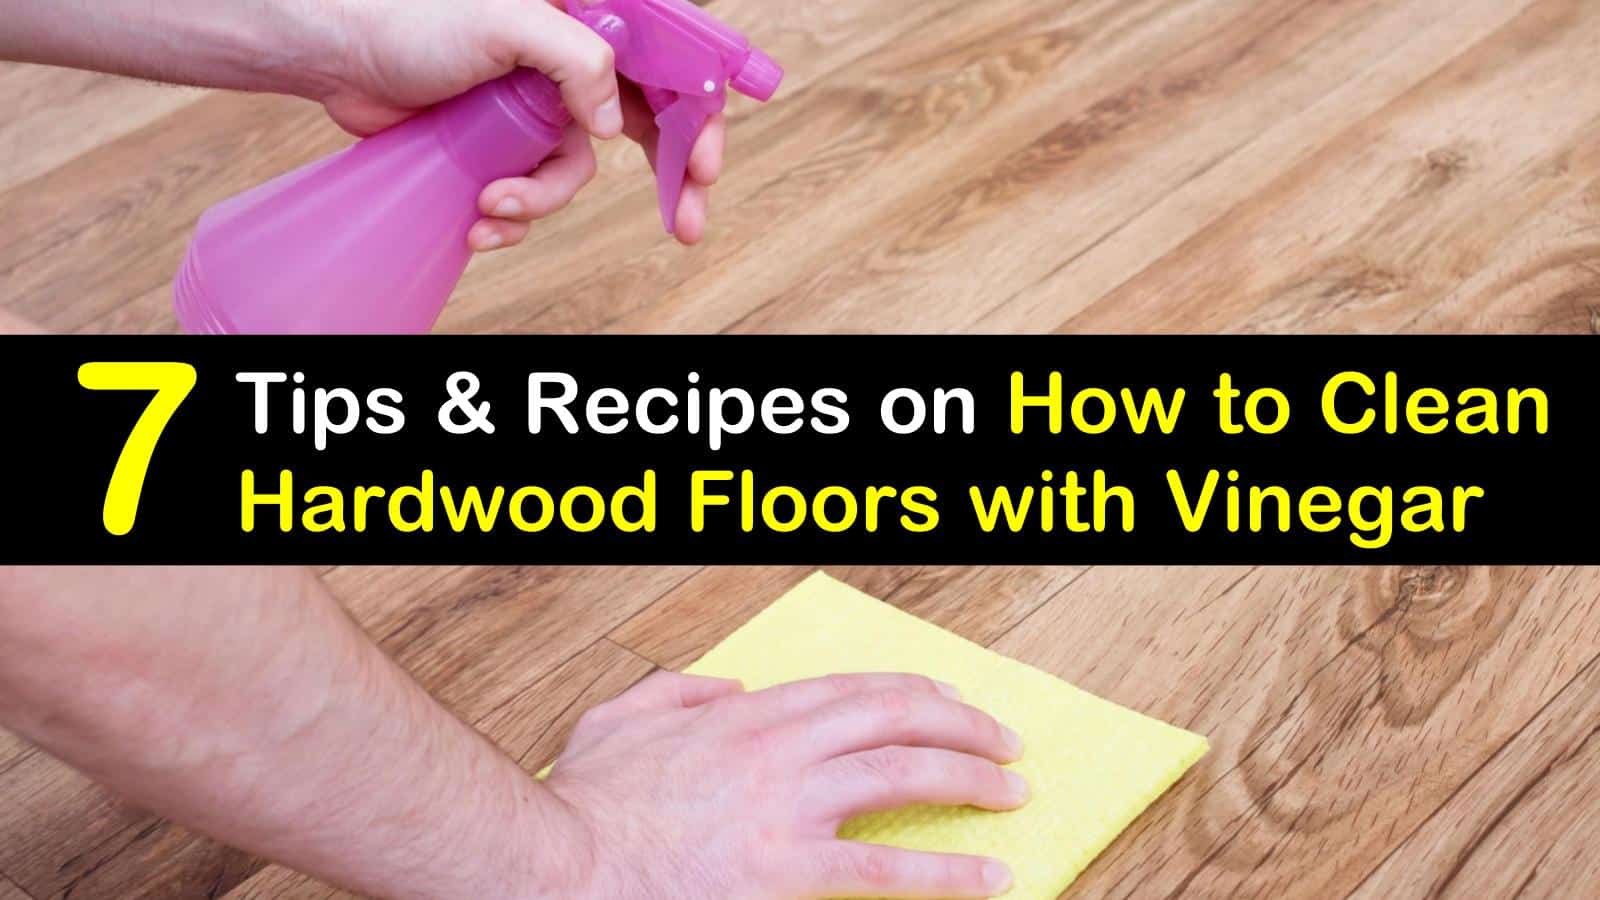 Clean Hardwood Floors With Vinegar, Best Way To Clean Old Hardwood Floors